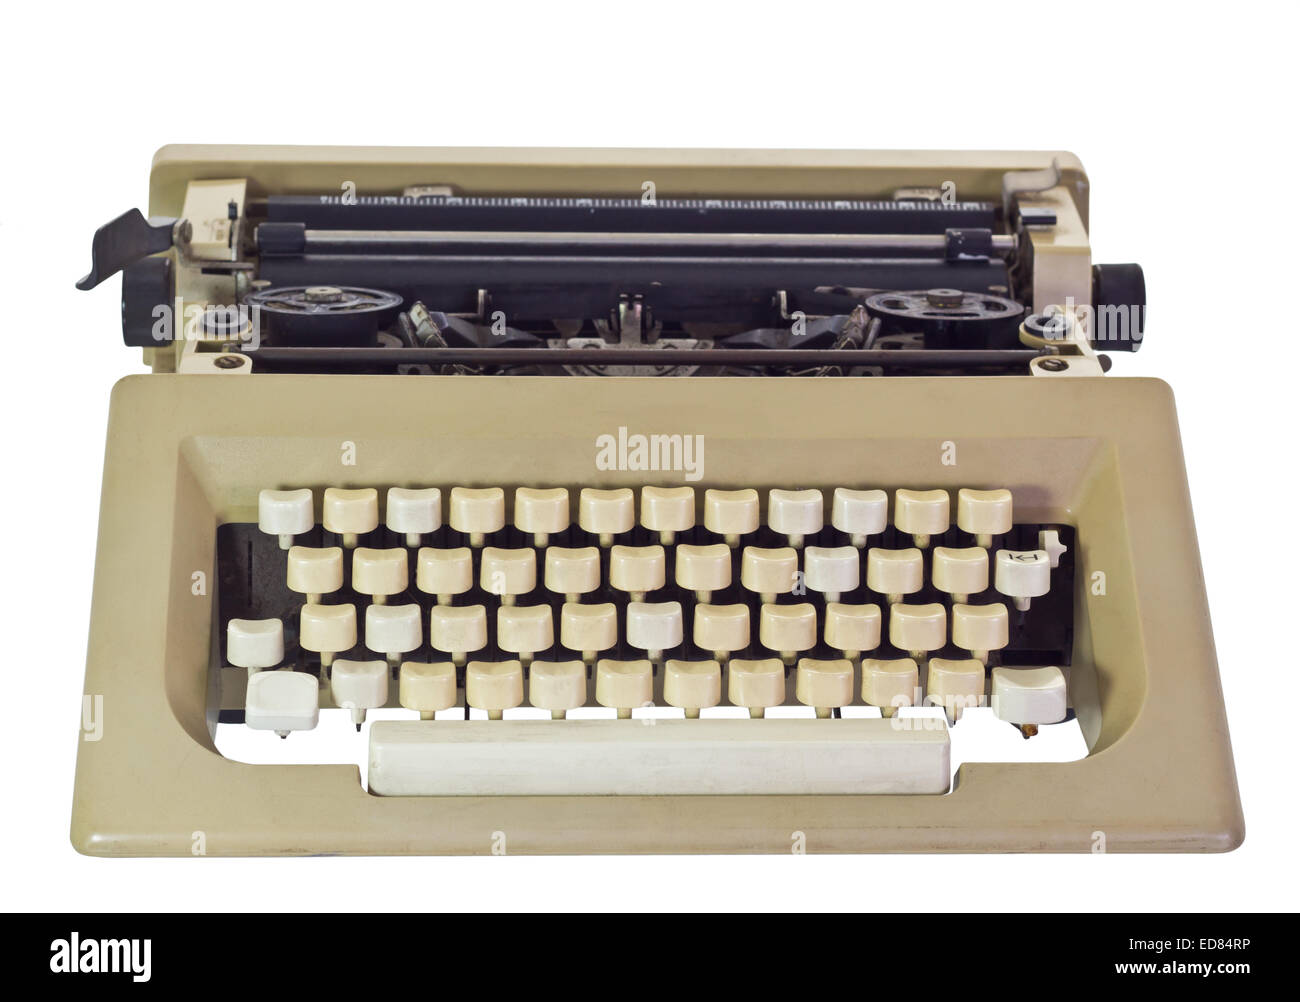 Old Typewriter, isolated on white background Stock Photo